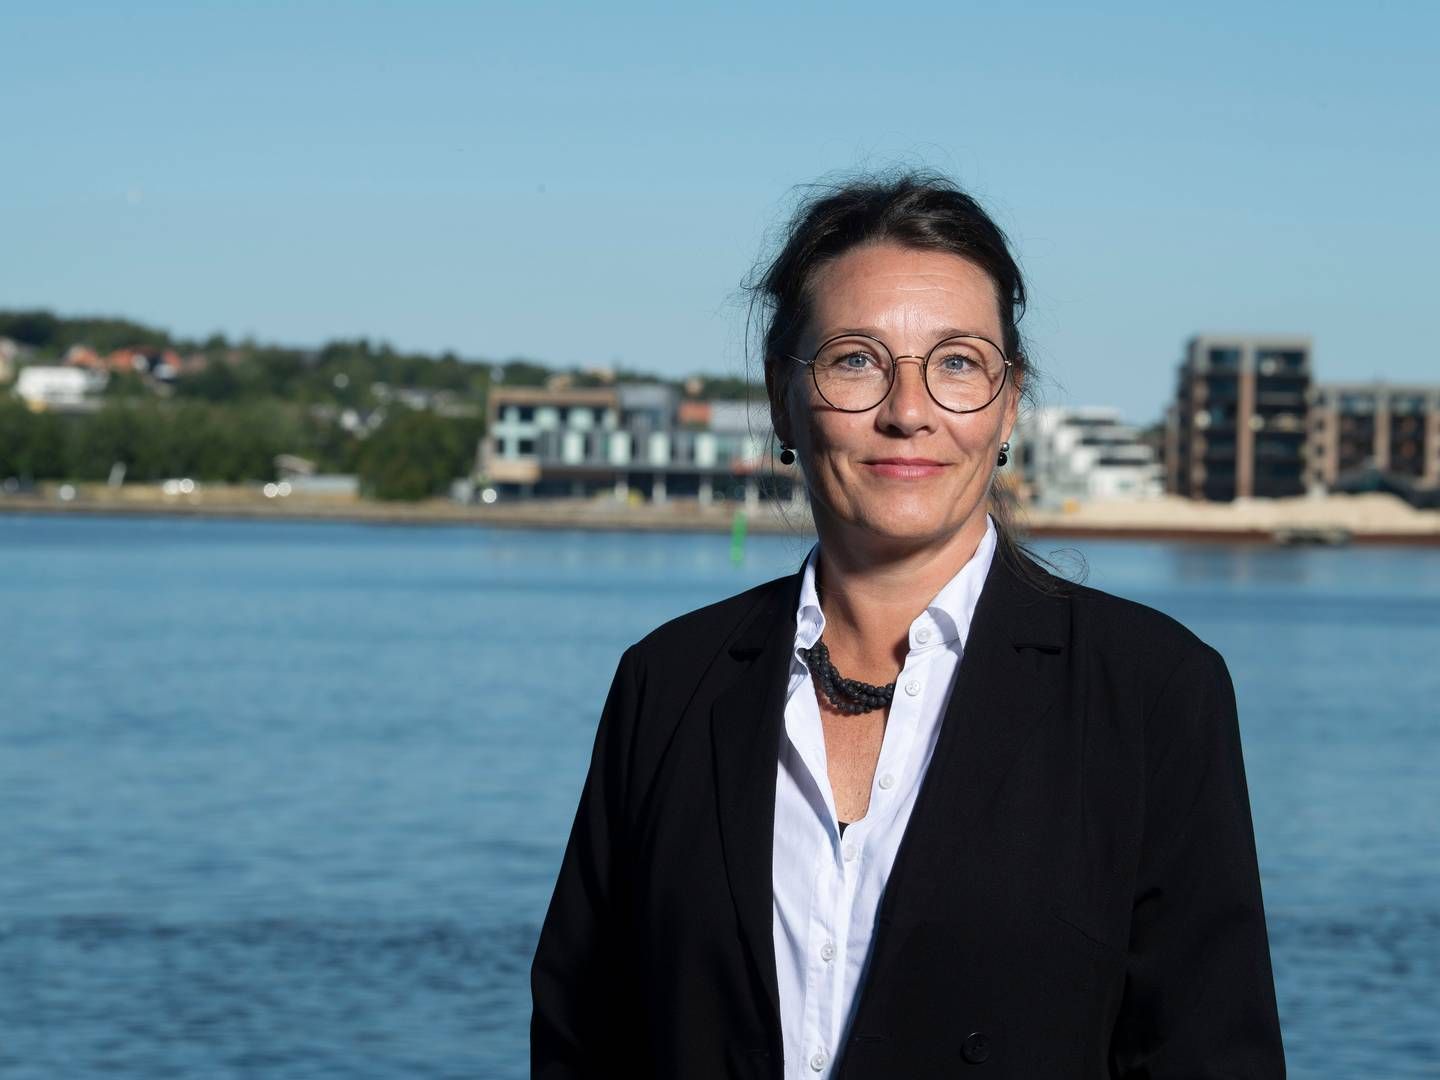 Charlotte Heldorf Rønn har i to år siddet som direktør for miljø og klima, en post, der blandt indebærer ansvar for miljøtilsyn hos virksomheder og landbrug, beskyttelse af grundvand og udledningen af spildevand. | Foto: Foto: Lars Horn / Baghuset